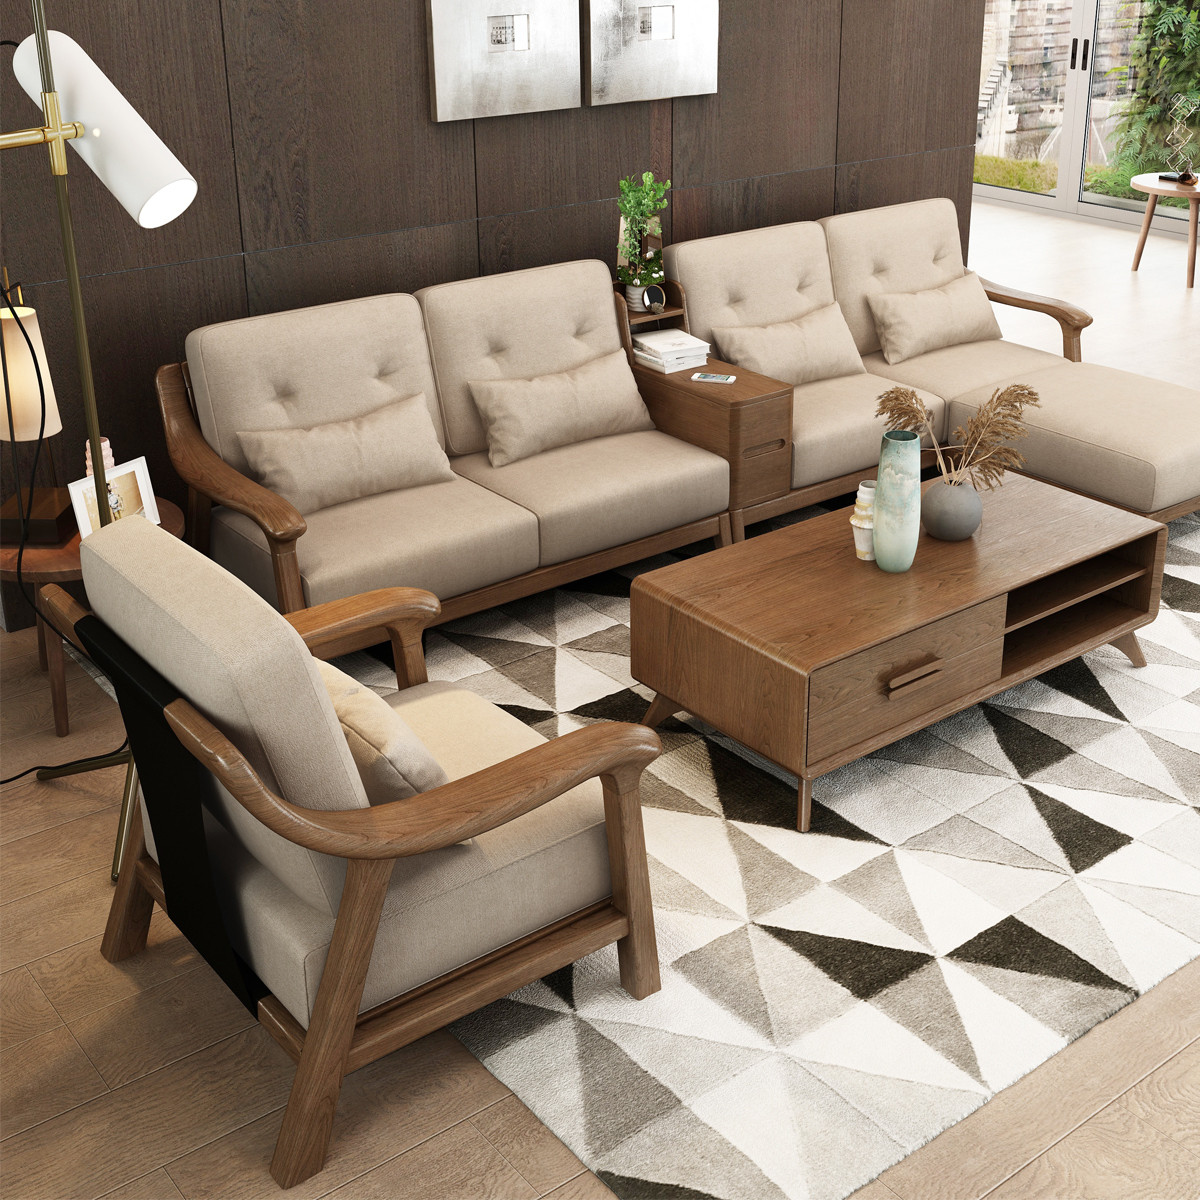 新中式实木沙发组合简约布艺可拆洗沙发北欧时尚客厅家具